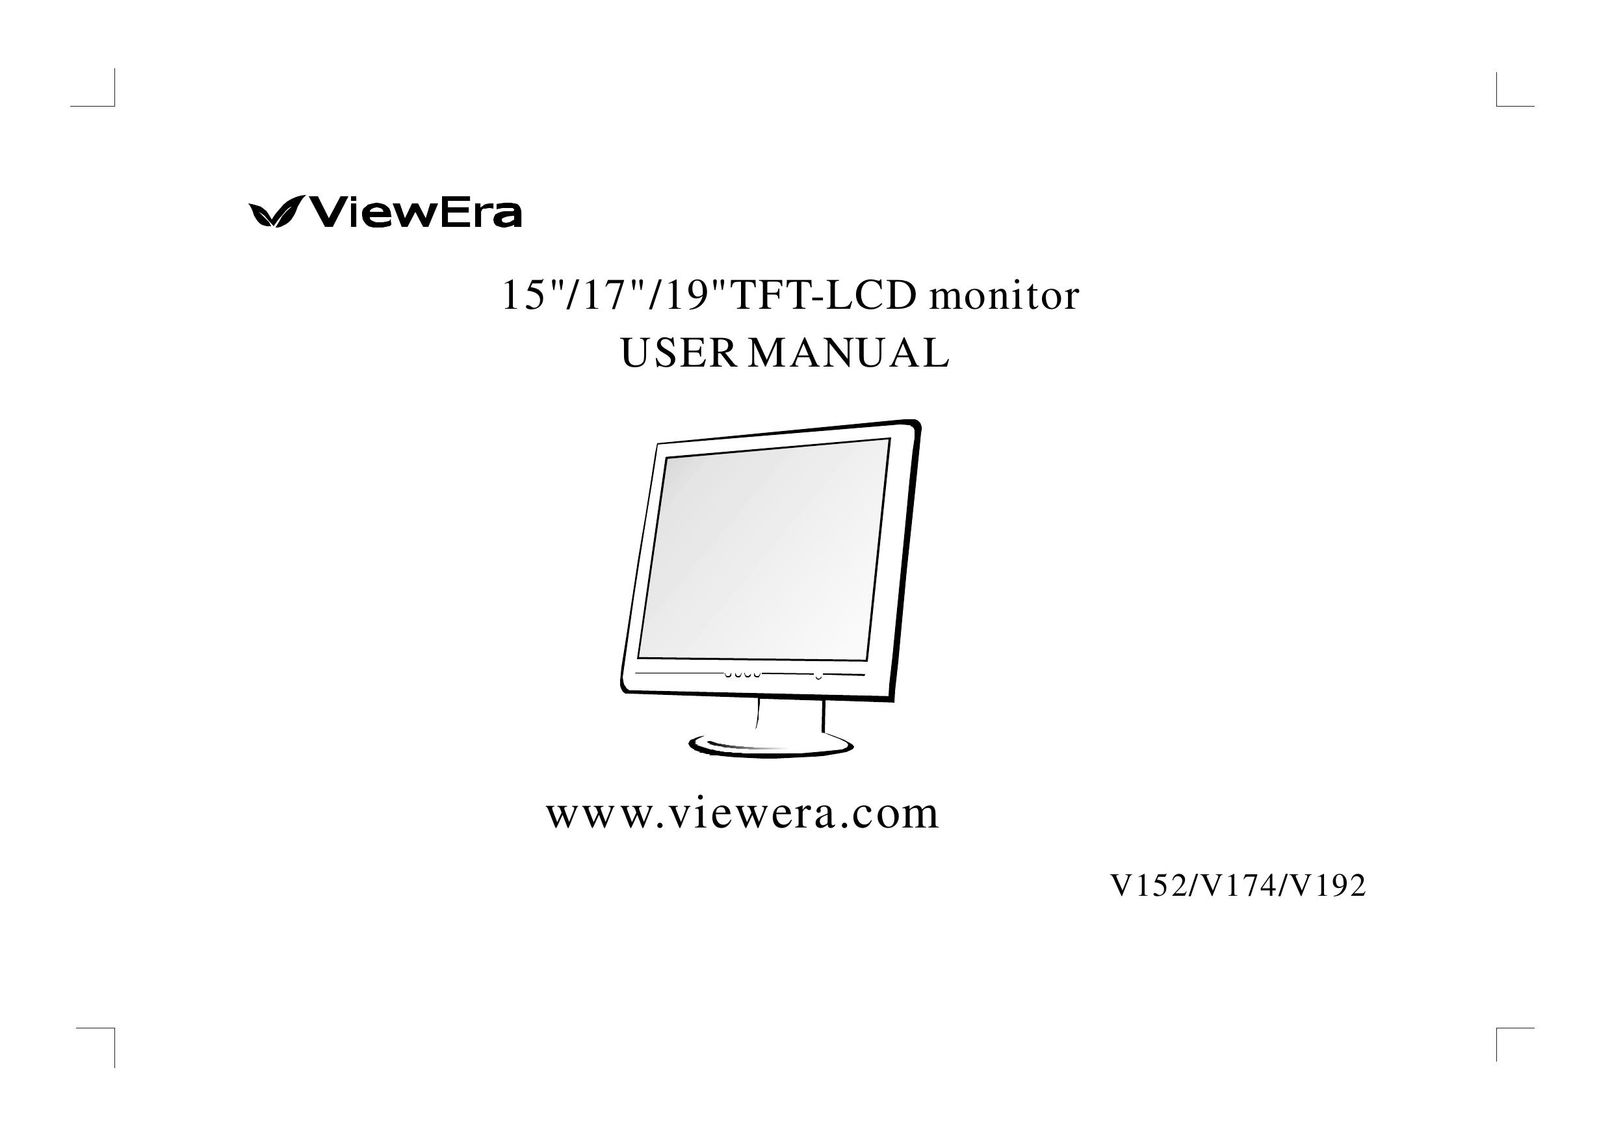 ViewEra V152 Computer Monitor User Manual